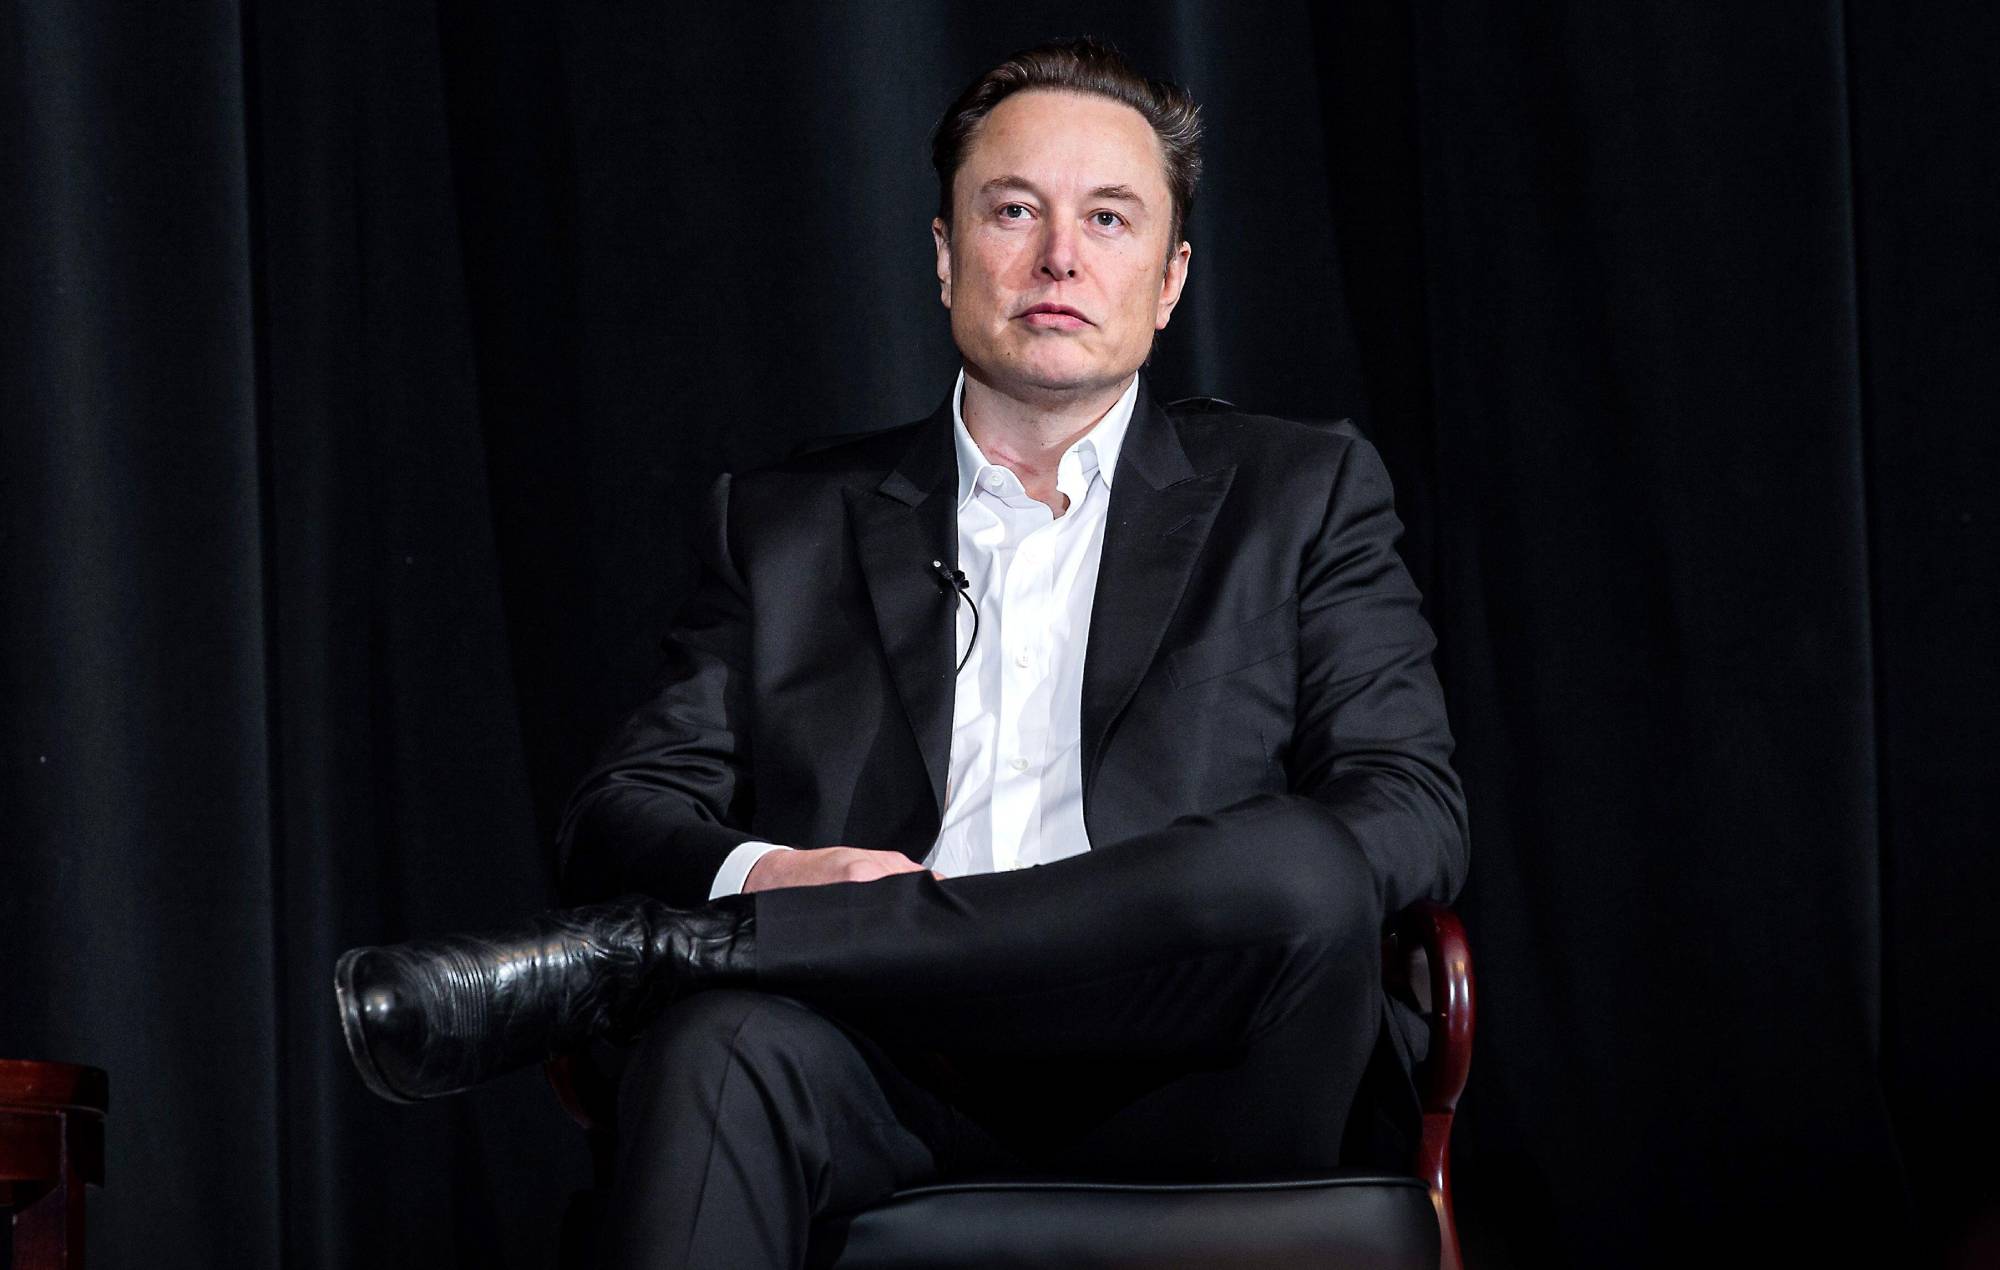 Elon Musk no longer world's richest man - BBC News